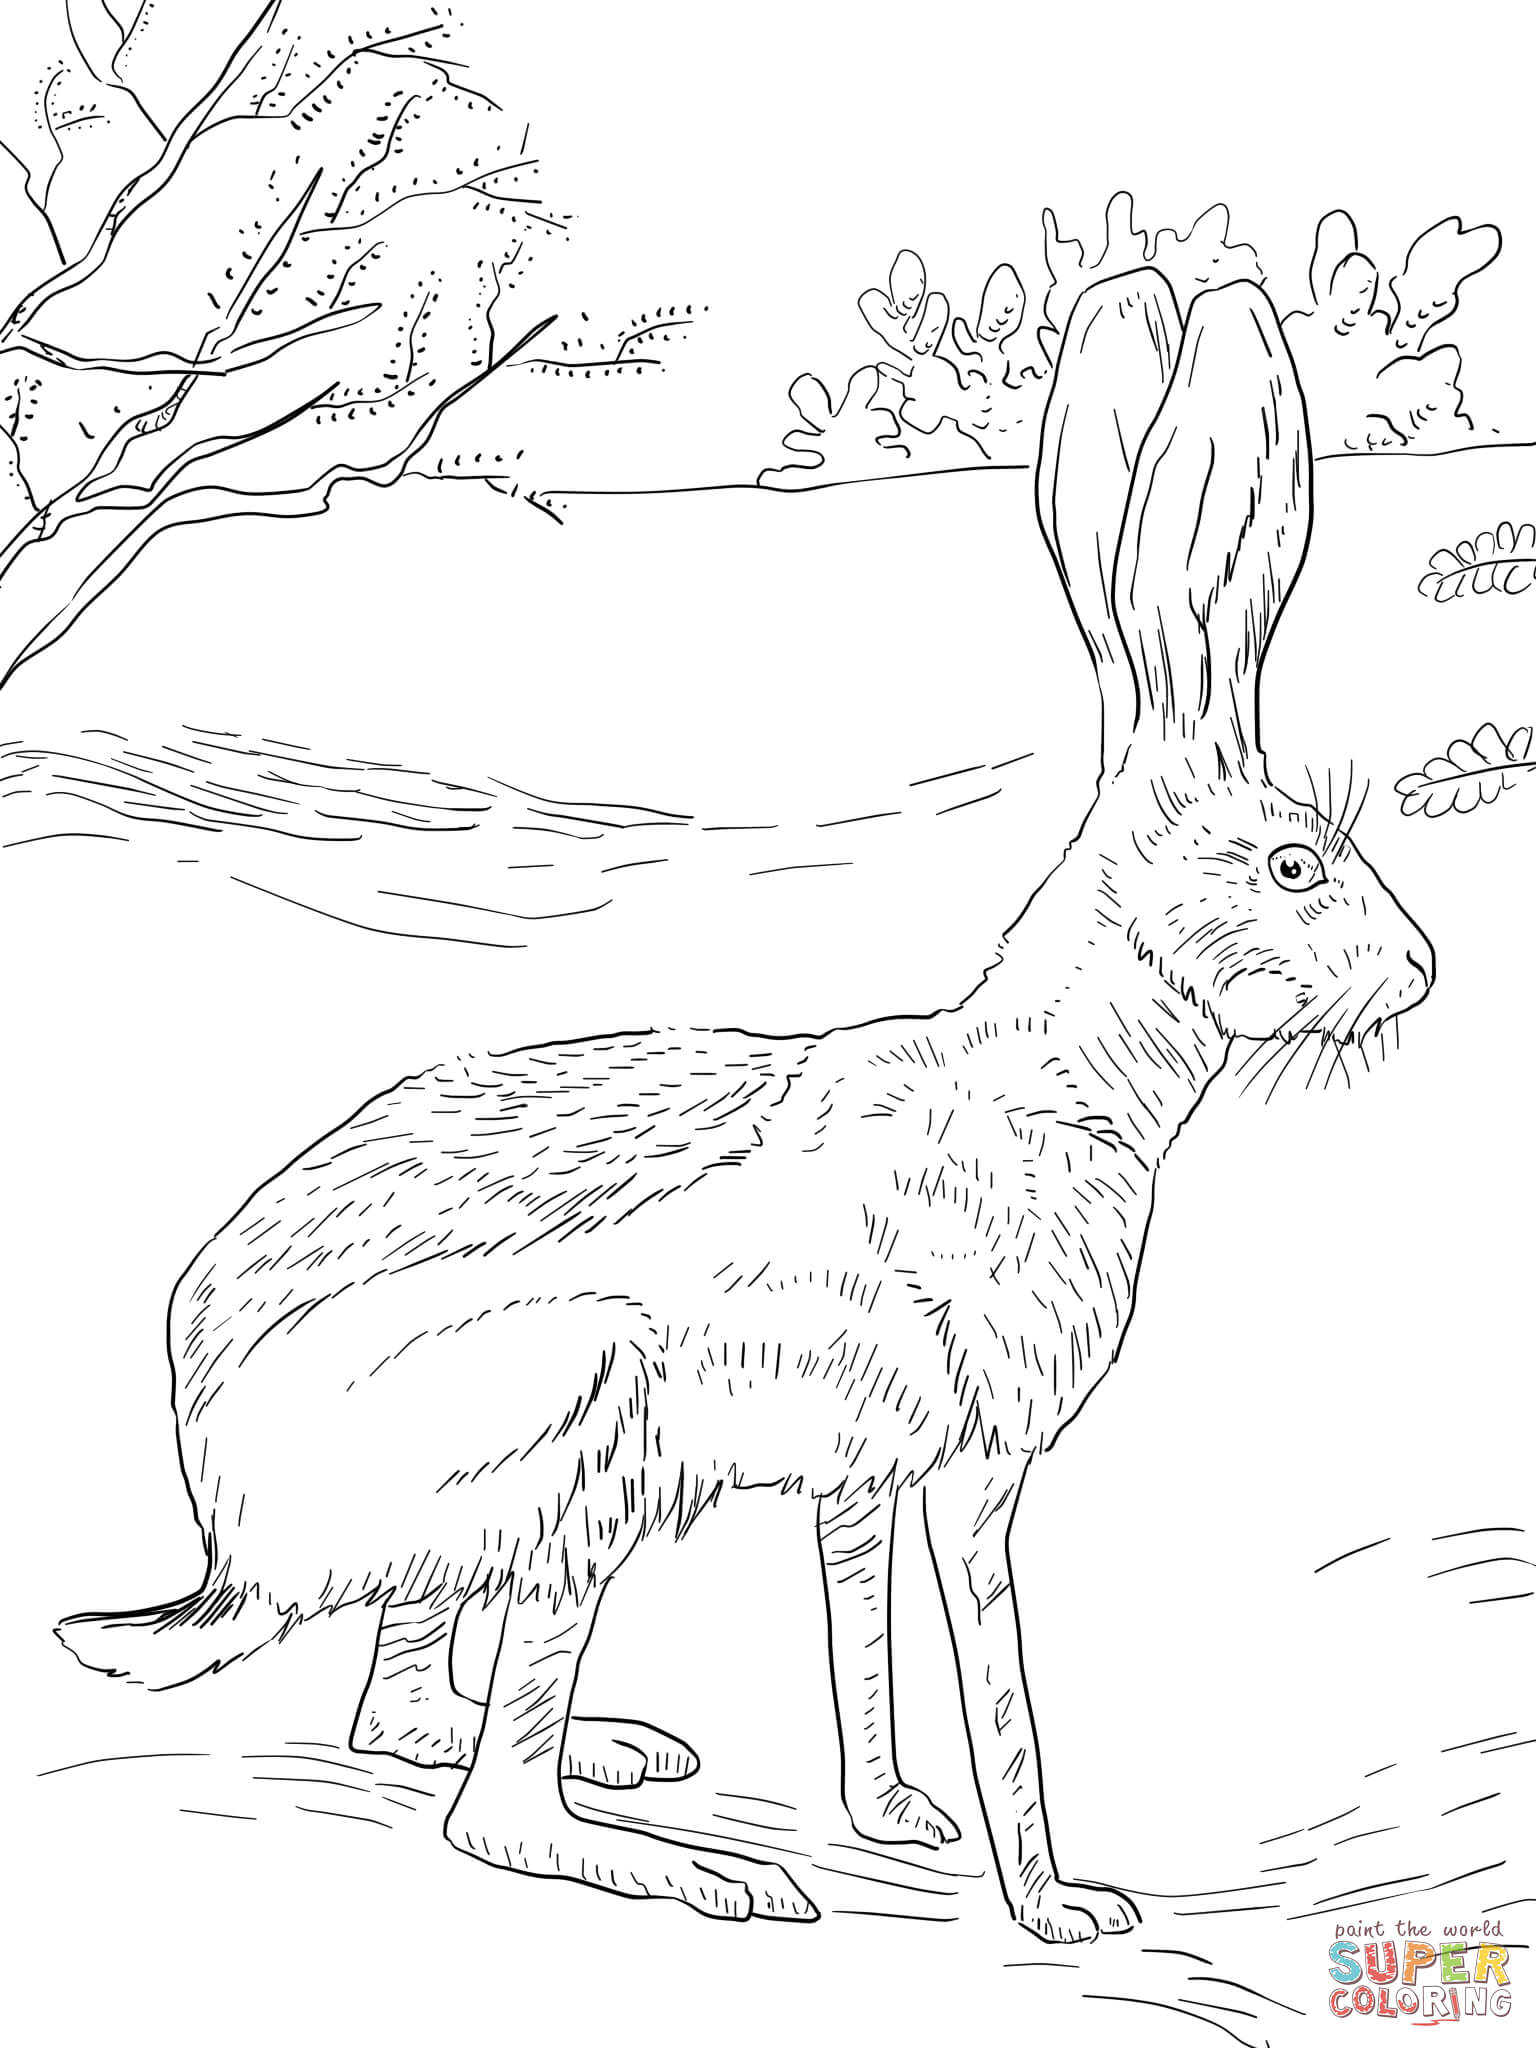 Jack Rabbit coloring #2, Download drawings